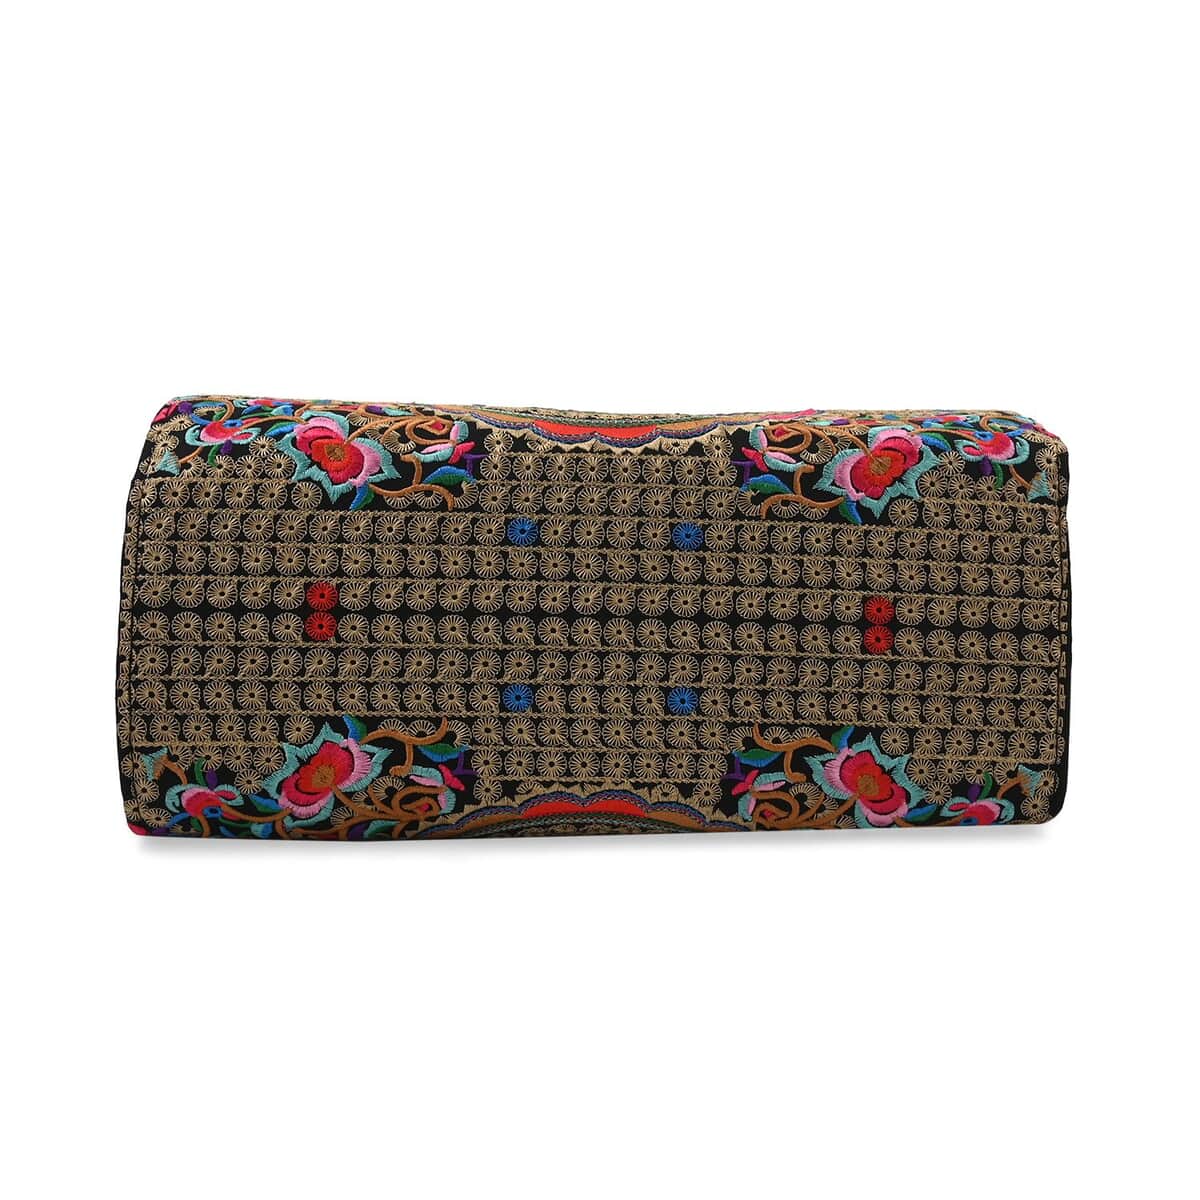 Multi Color & Floral Embroidered Handbag with Shoulder Strap image number 4